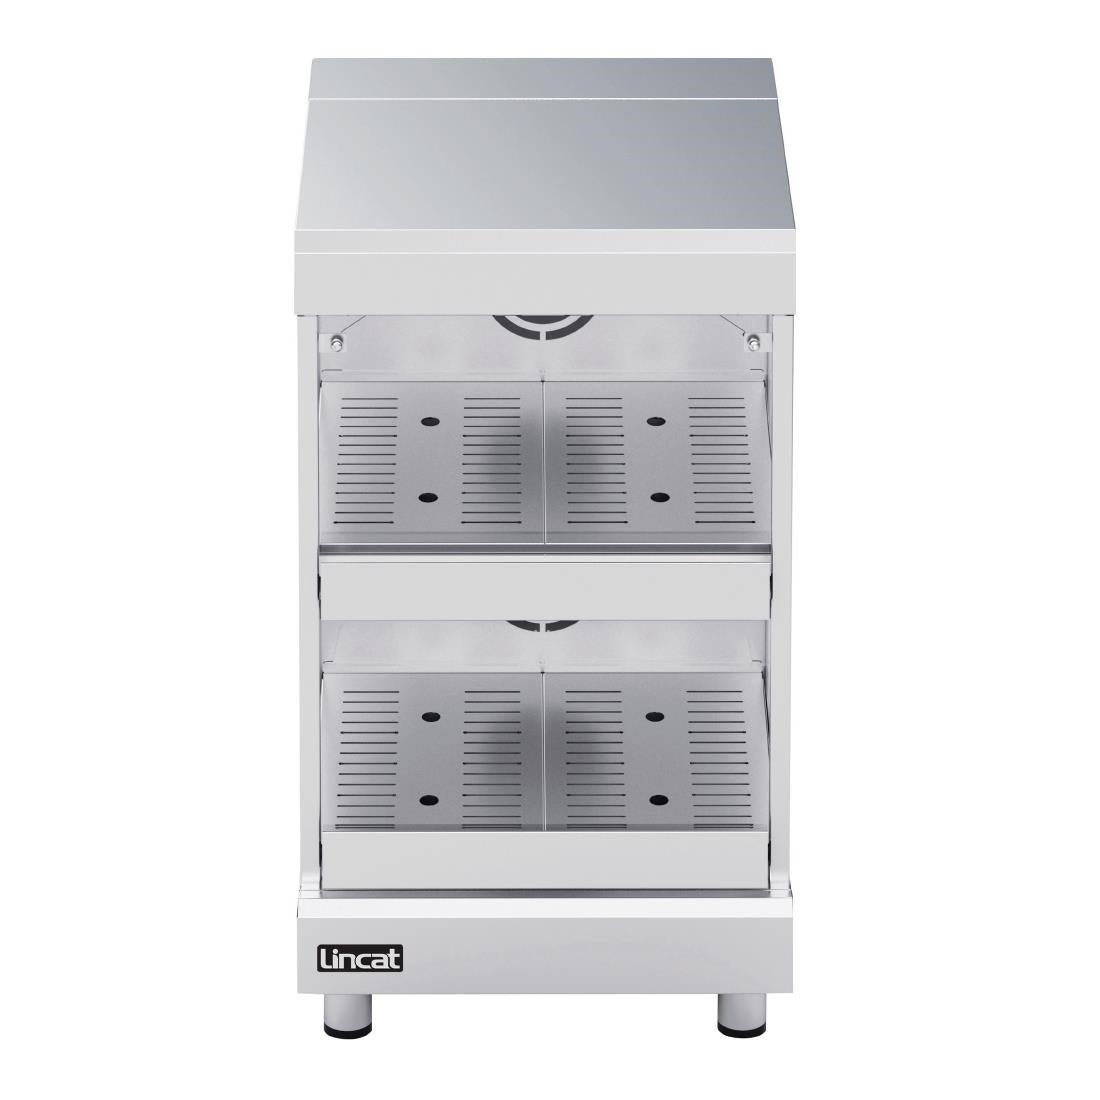 Lincat Seal Countertop Hot Air Display Cabinet HAD50